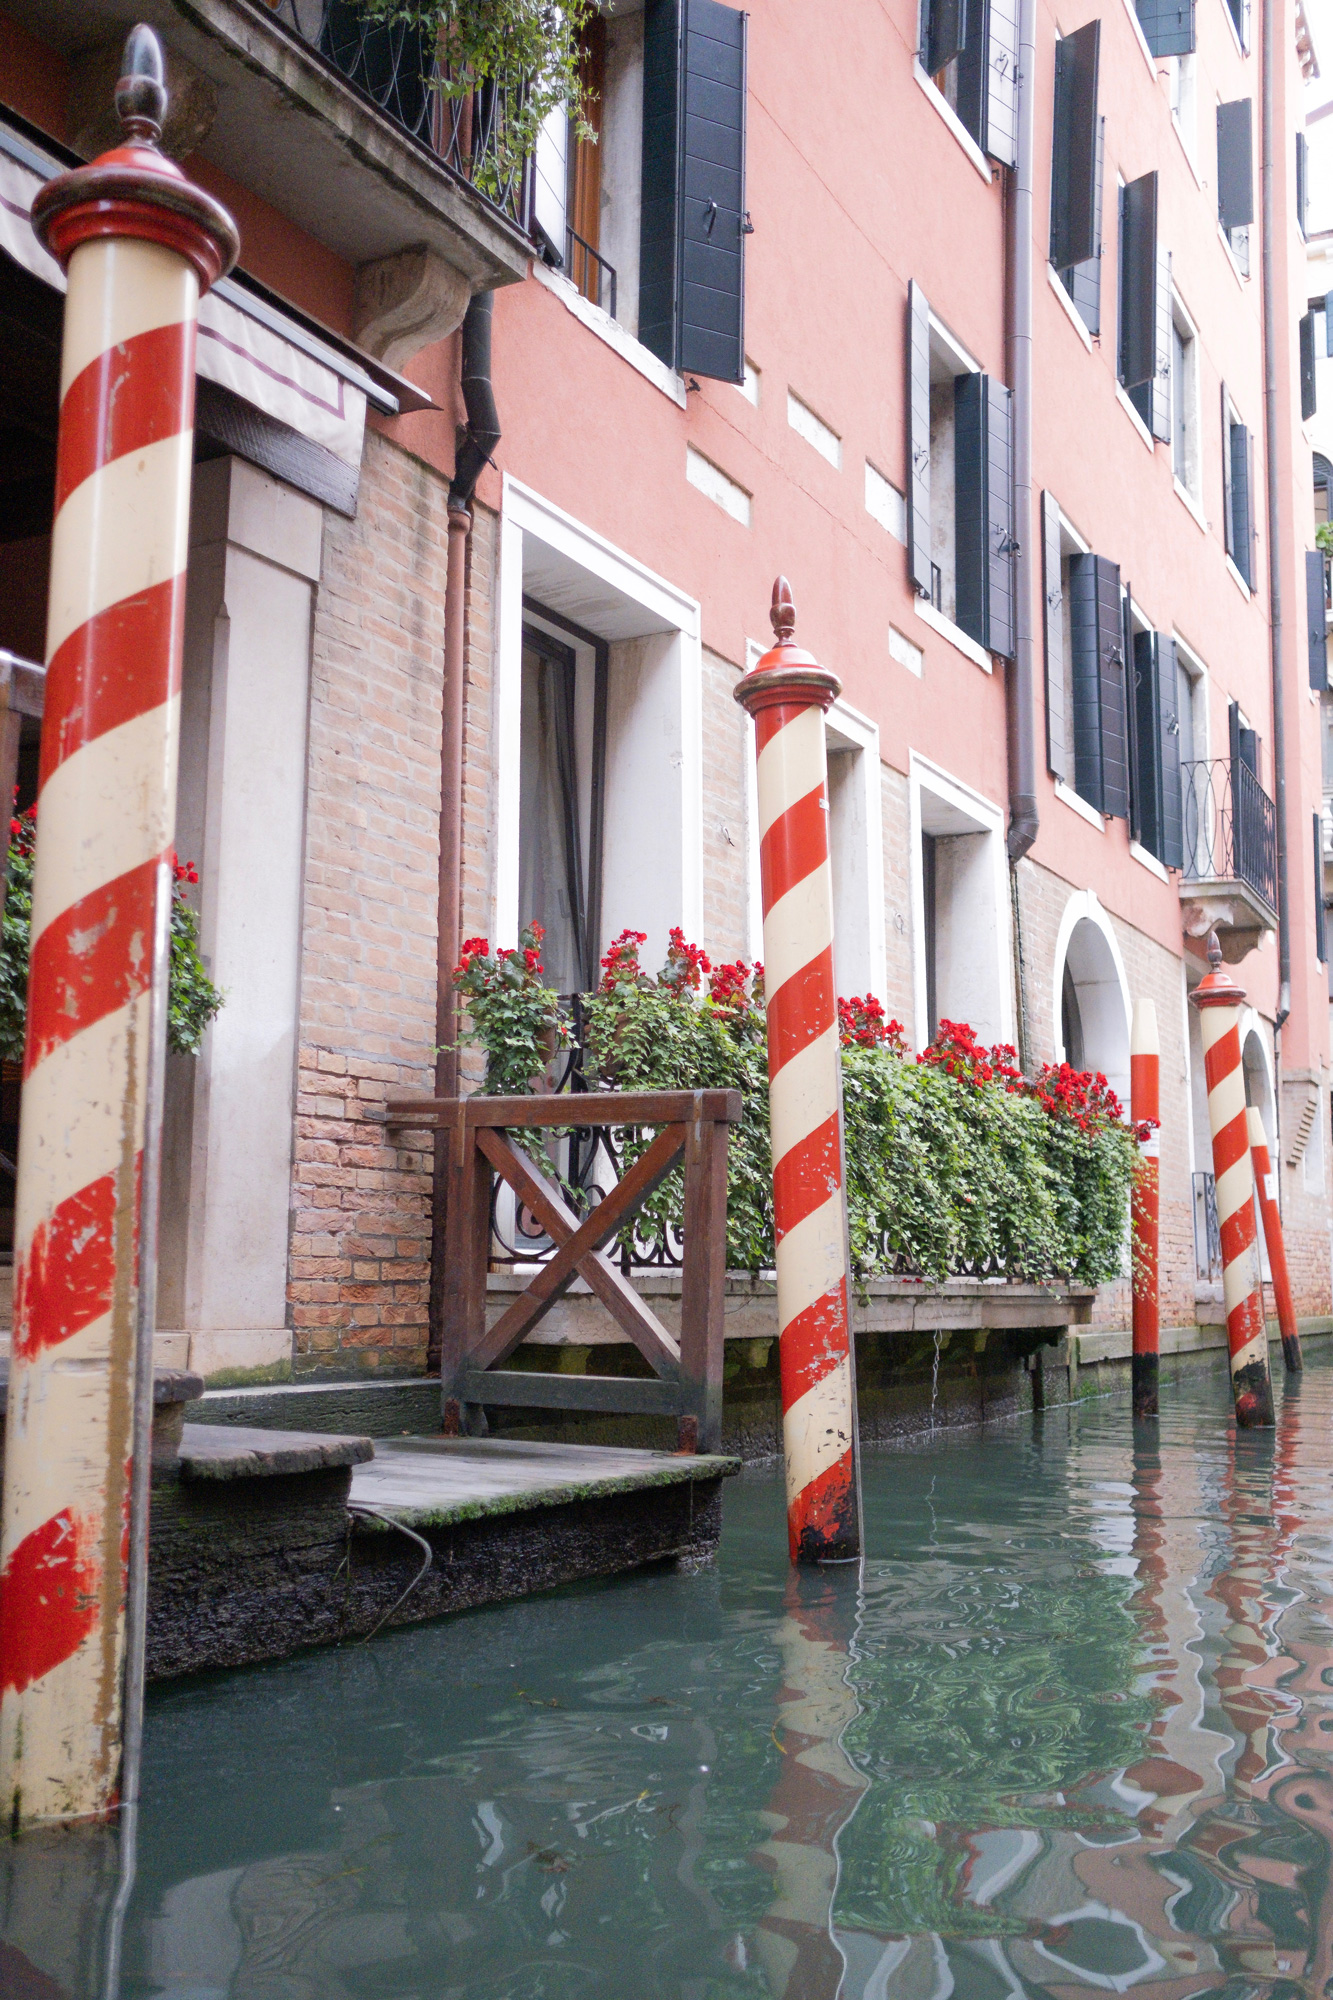 Gondola Ride Venice Italy